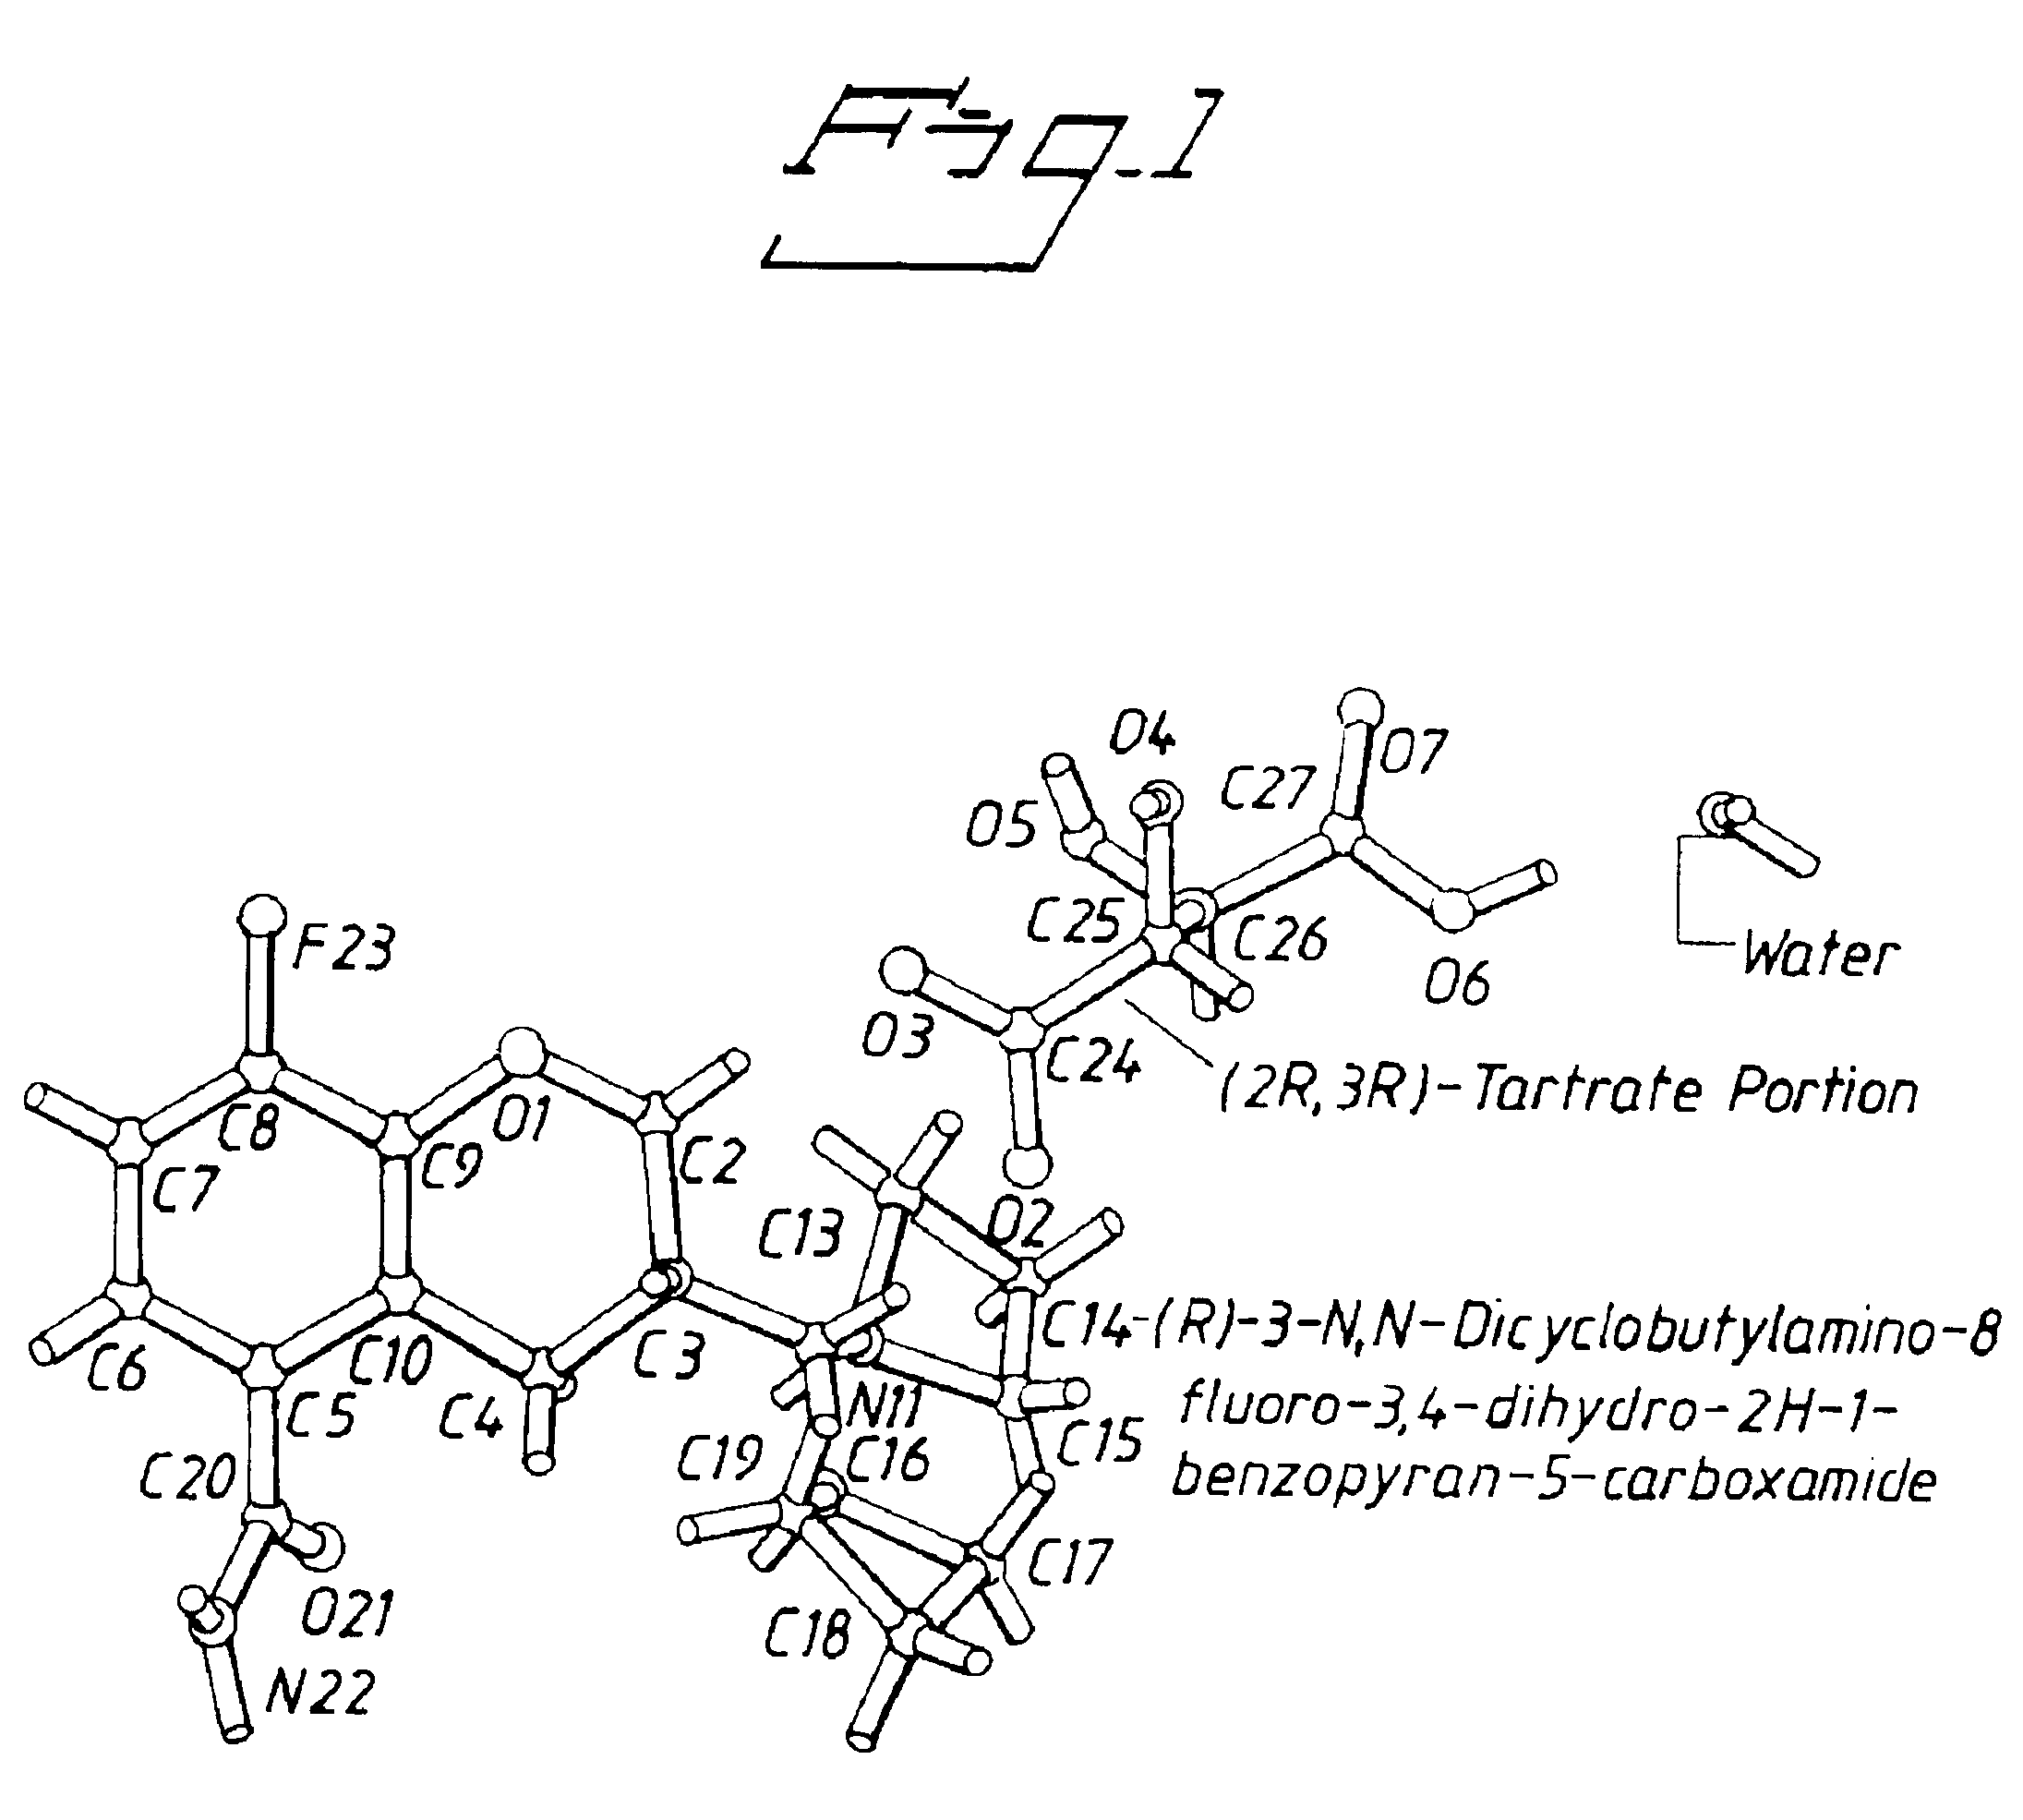 Tartrate salts of (R) -3-N,N- dicyclobutylamino-8-fluoro-3,4-dihydro-2H-1- benzopyran-5-carboxamide